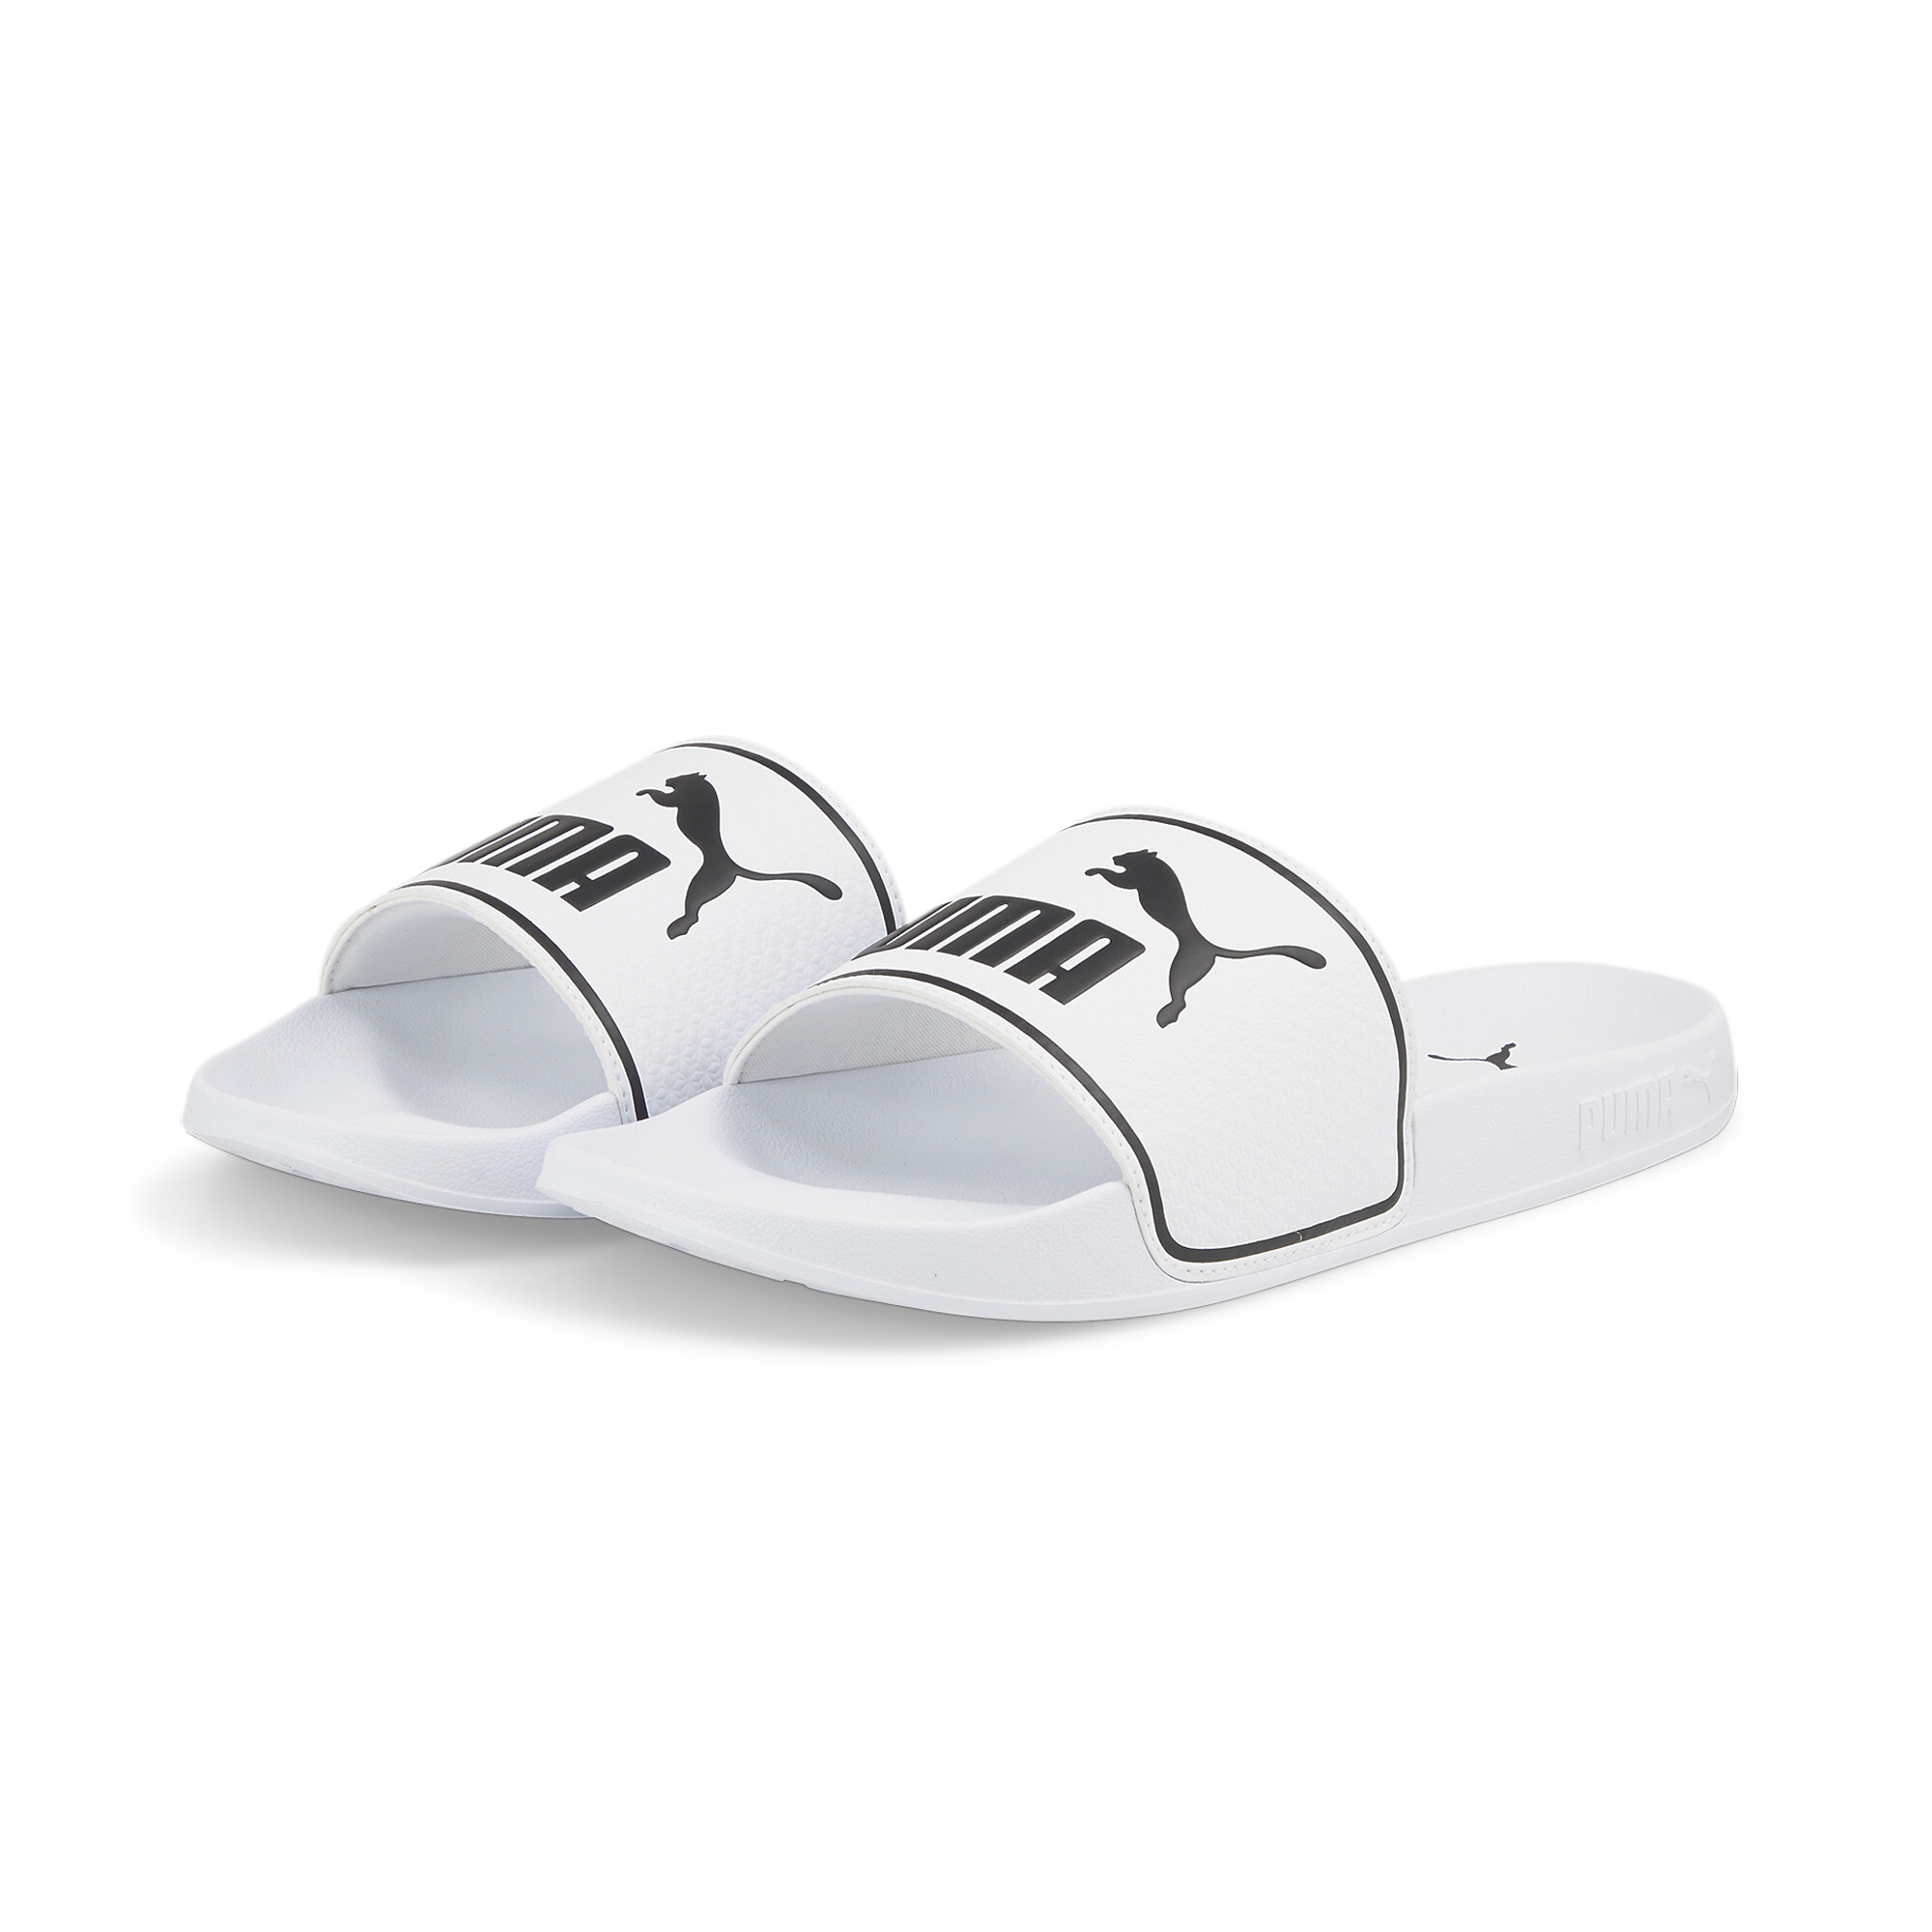 Men's PUMA Leadcat 2.0 Sandals In White, Size EU 42